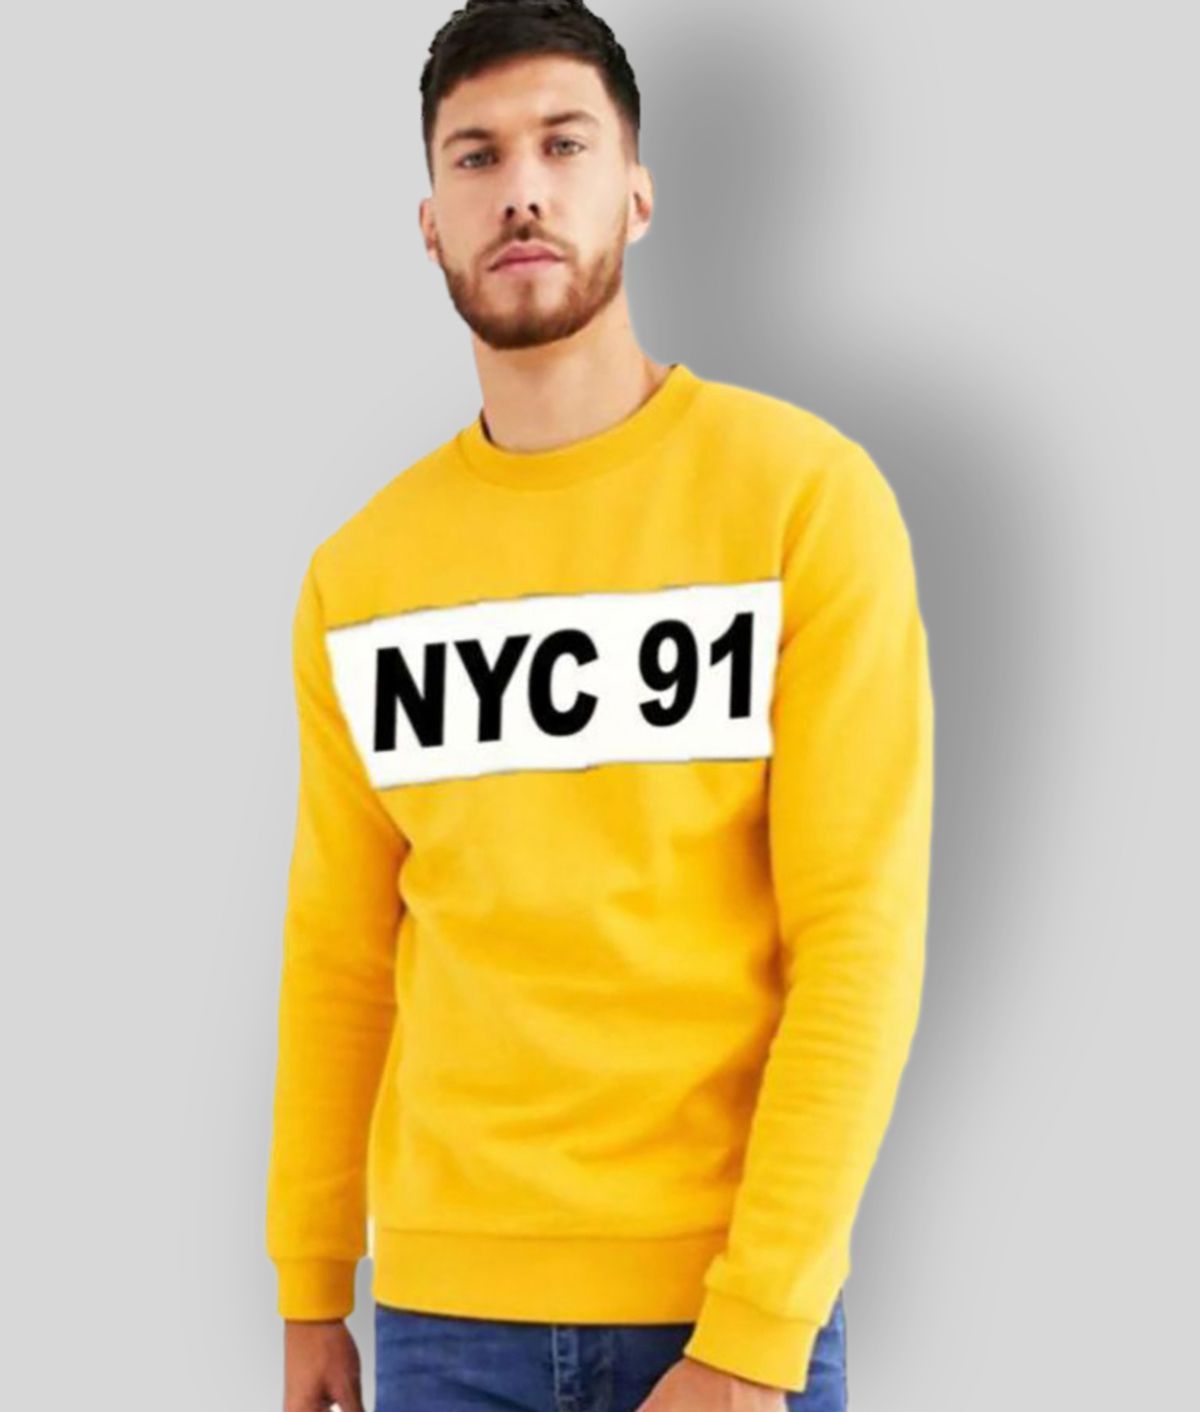     			Leotude Yellow Sweatshirt